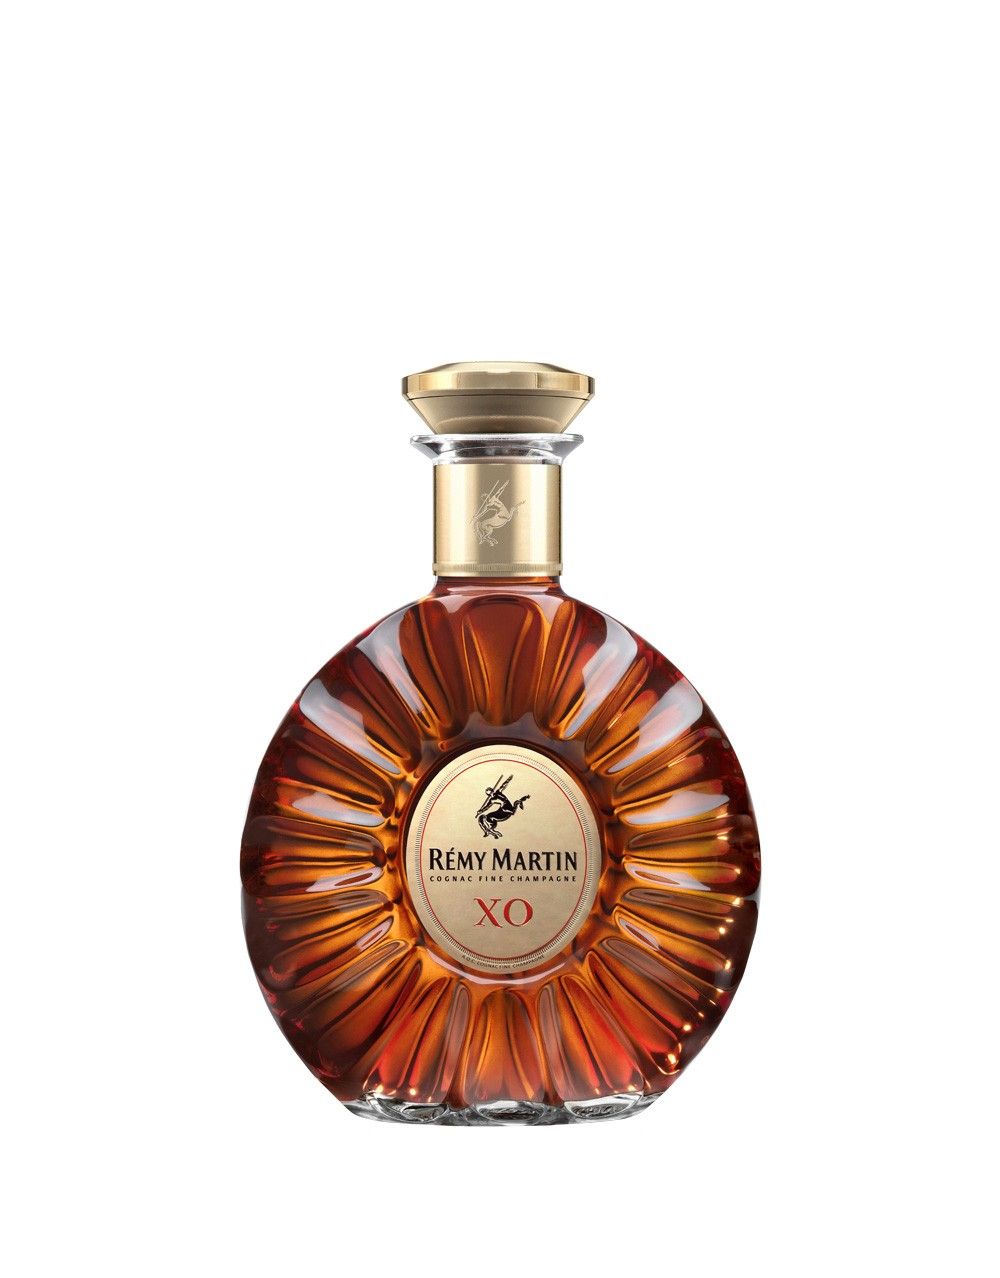 Rémy Martin XO Cognac | Buy Online or Send as a Gift